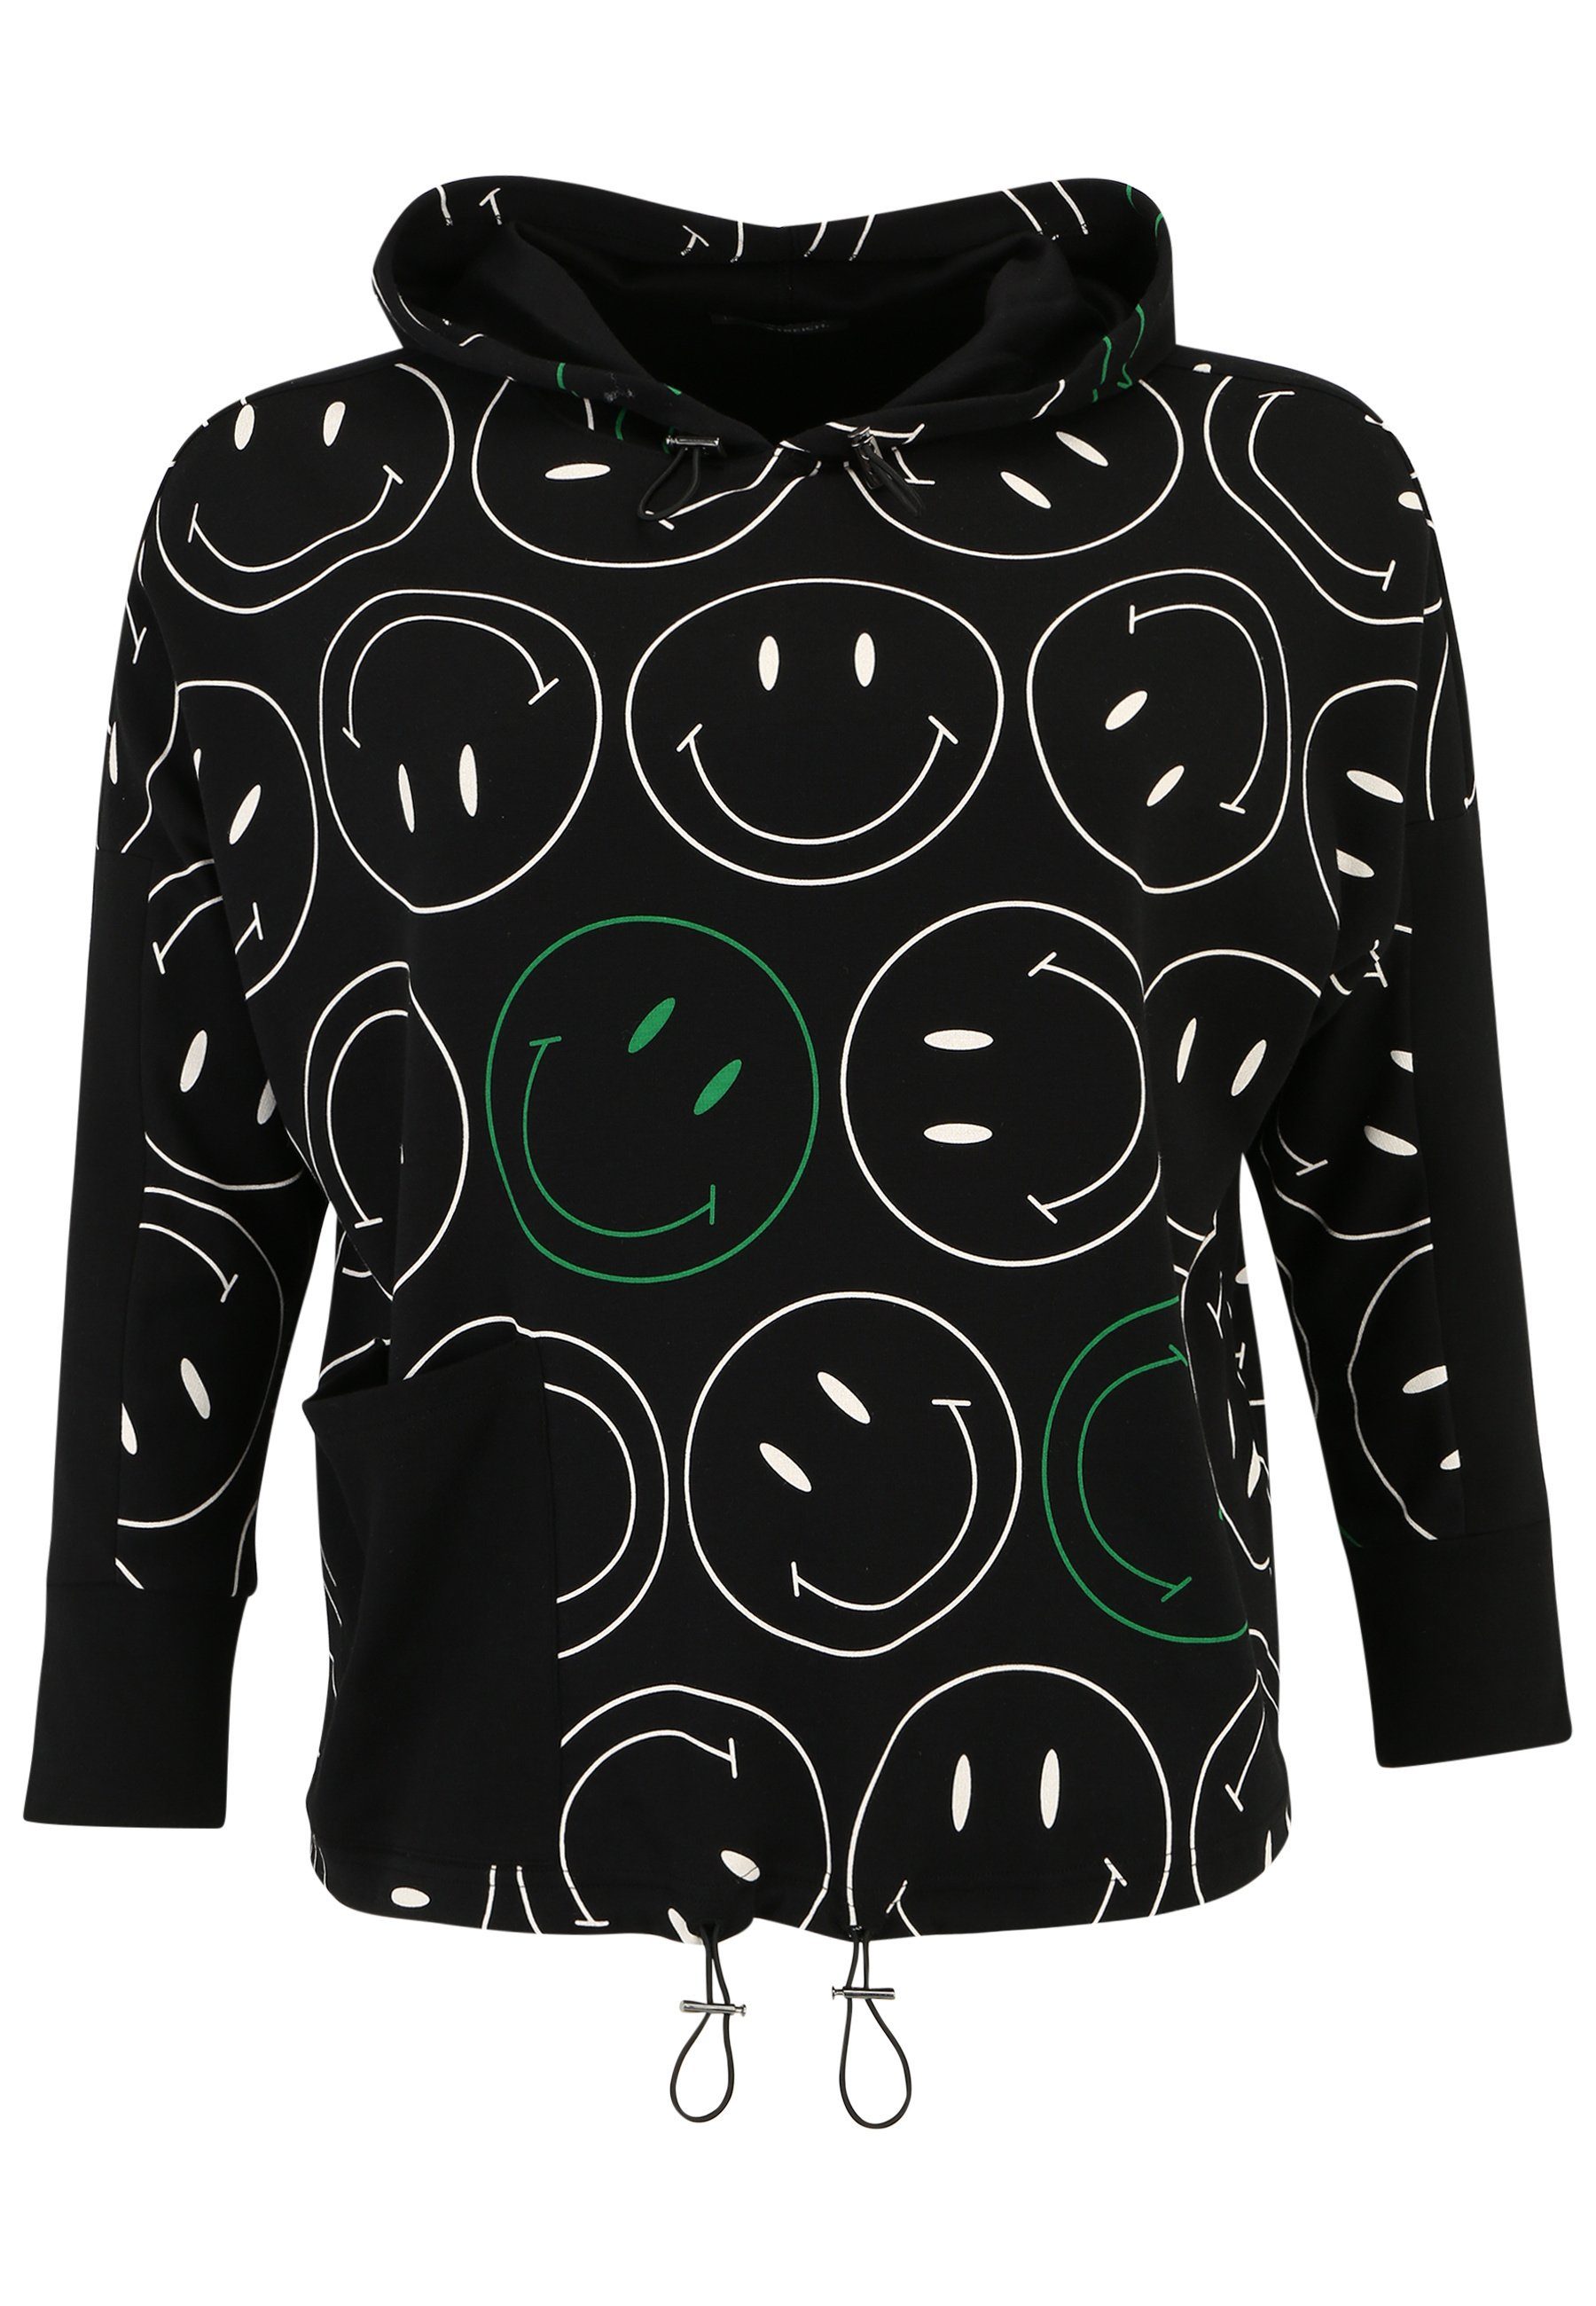 modernem Design Hoody Streich Longsleeve Doris mit und Smiley-Print mit Sweatshirt